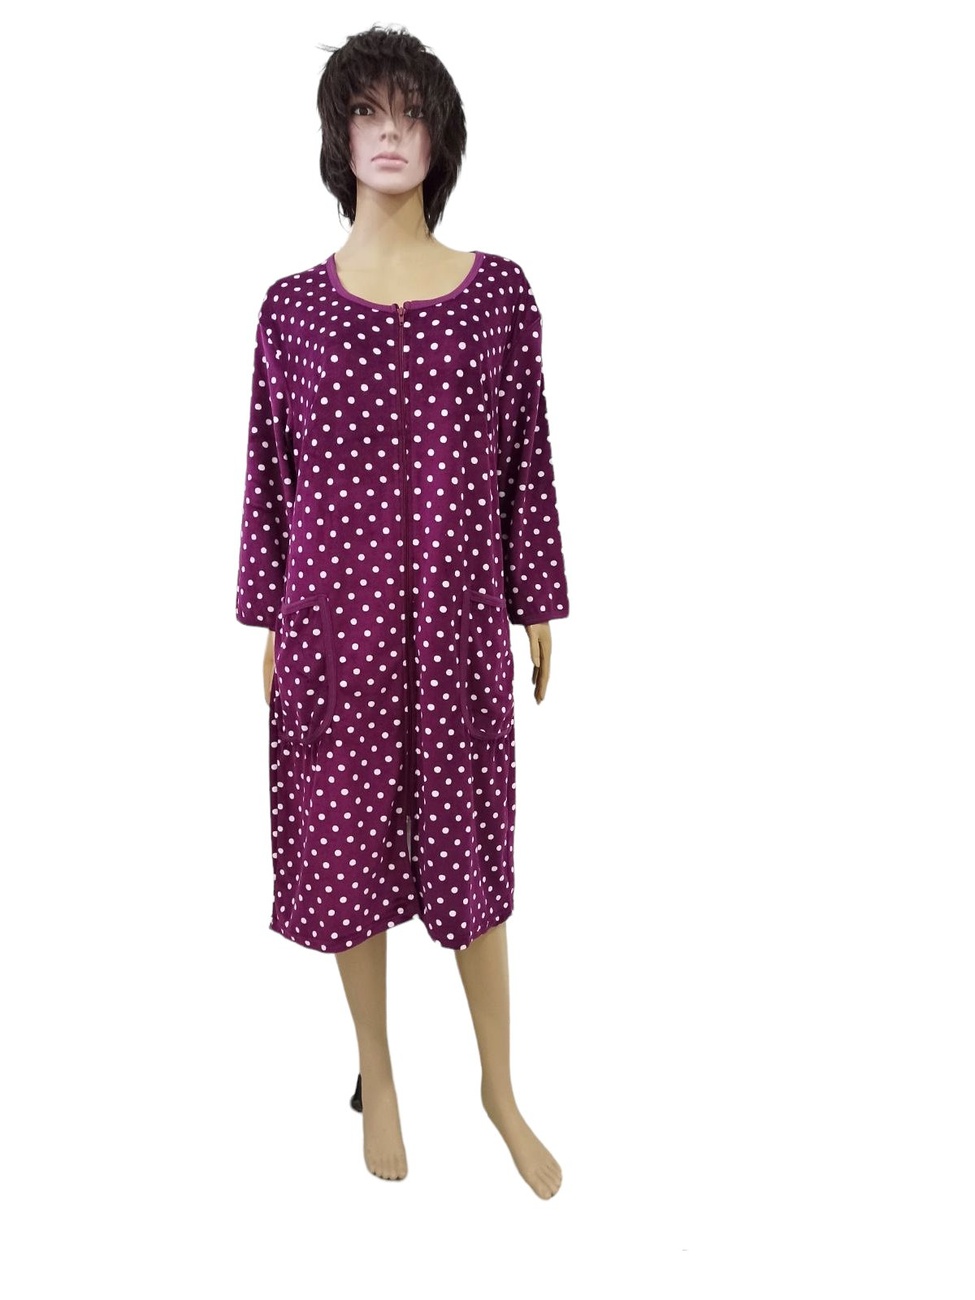 Жіночі теплі махрові халати. Халат «ЛАРІСА» велюр бузкового кольору. ТМ «Пташка Украина»